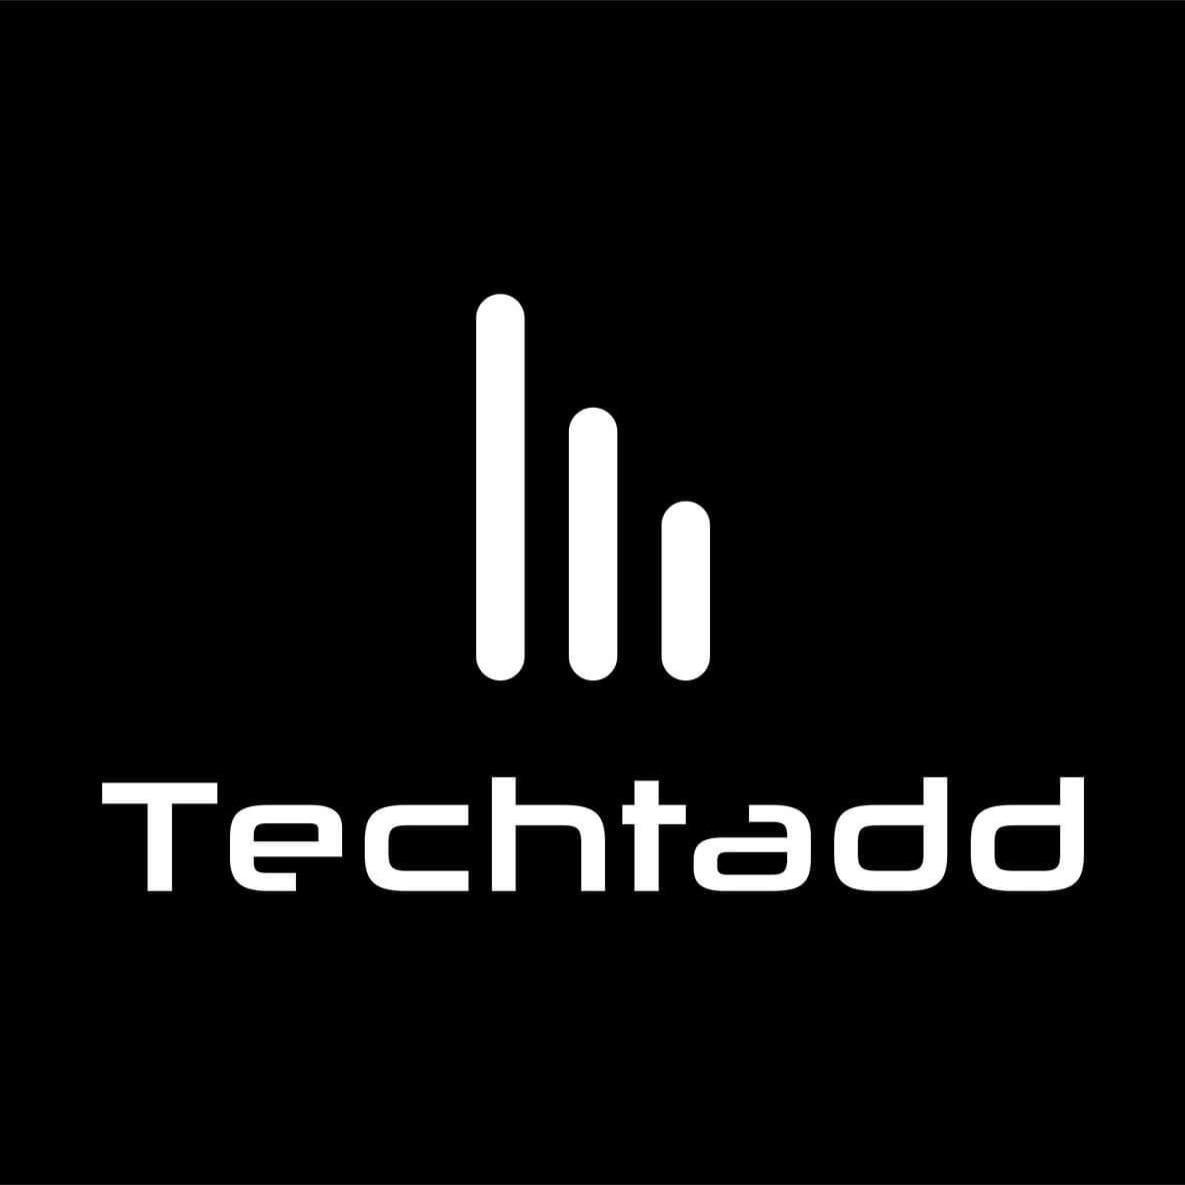 Techtadd Logo